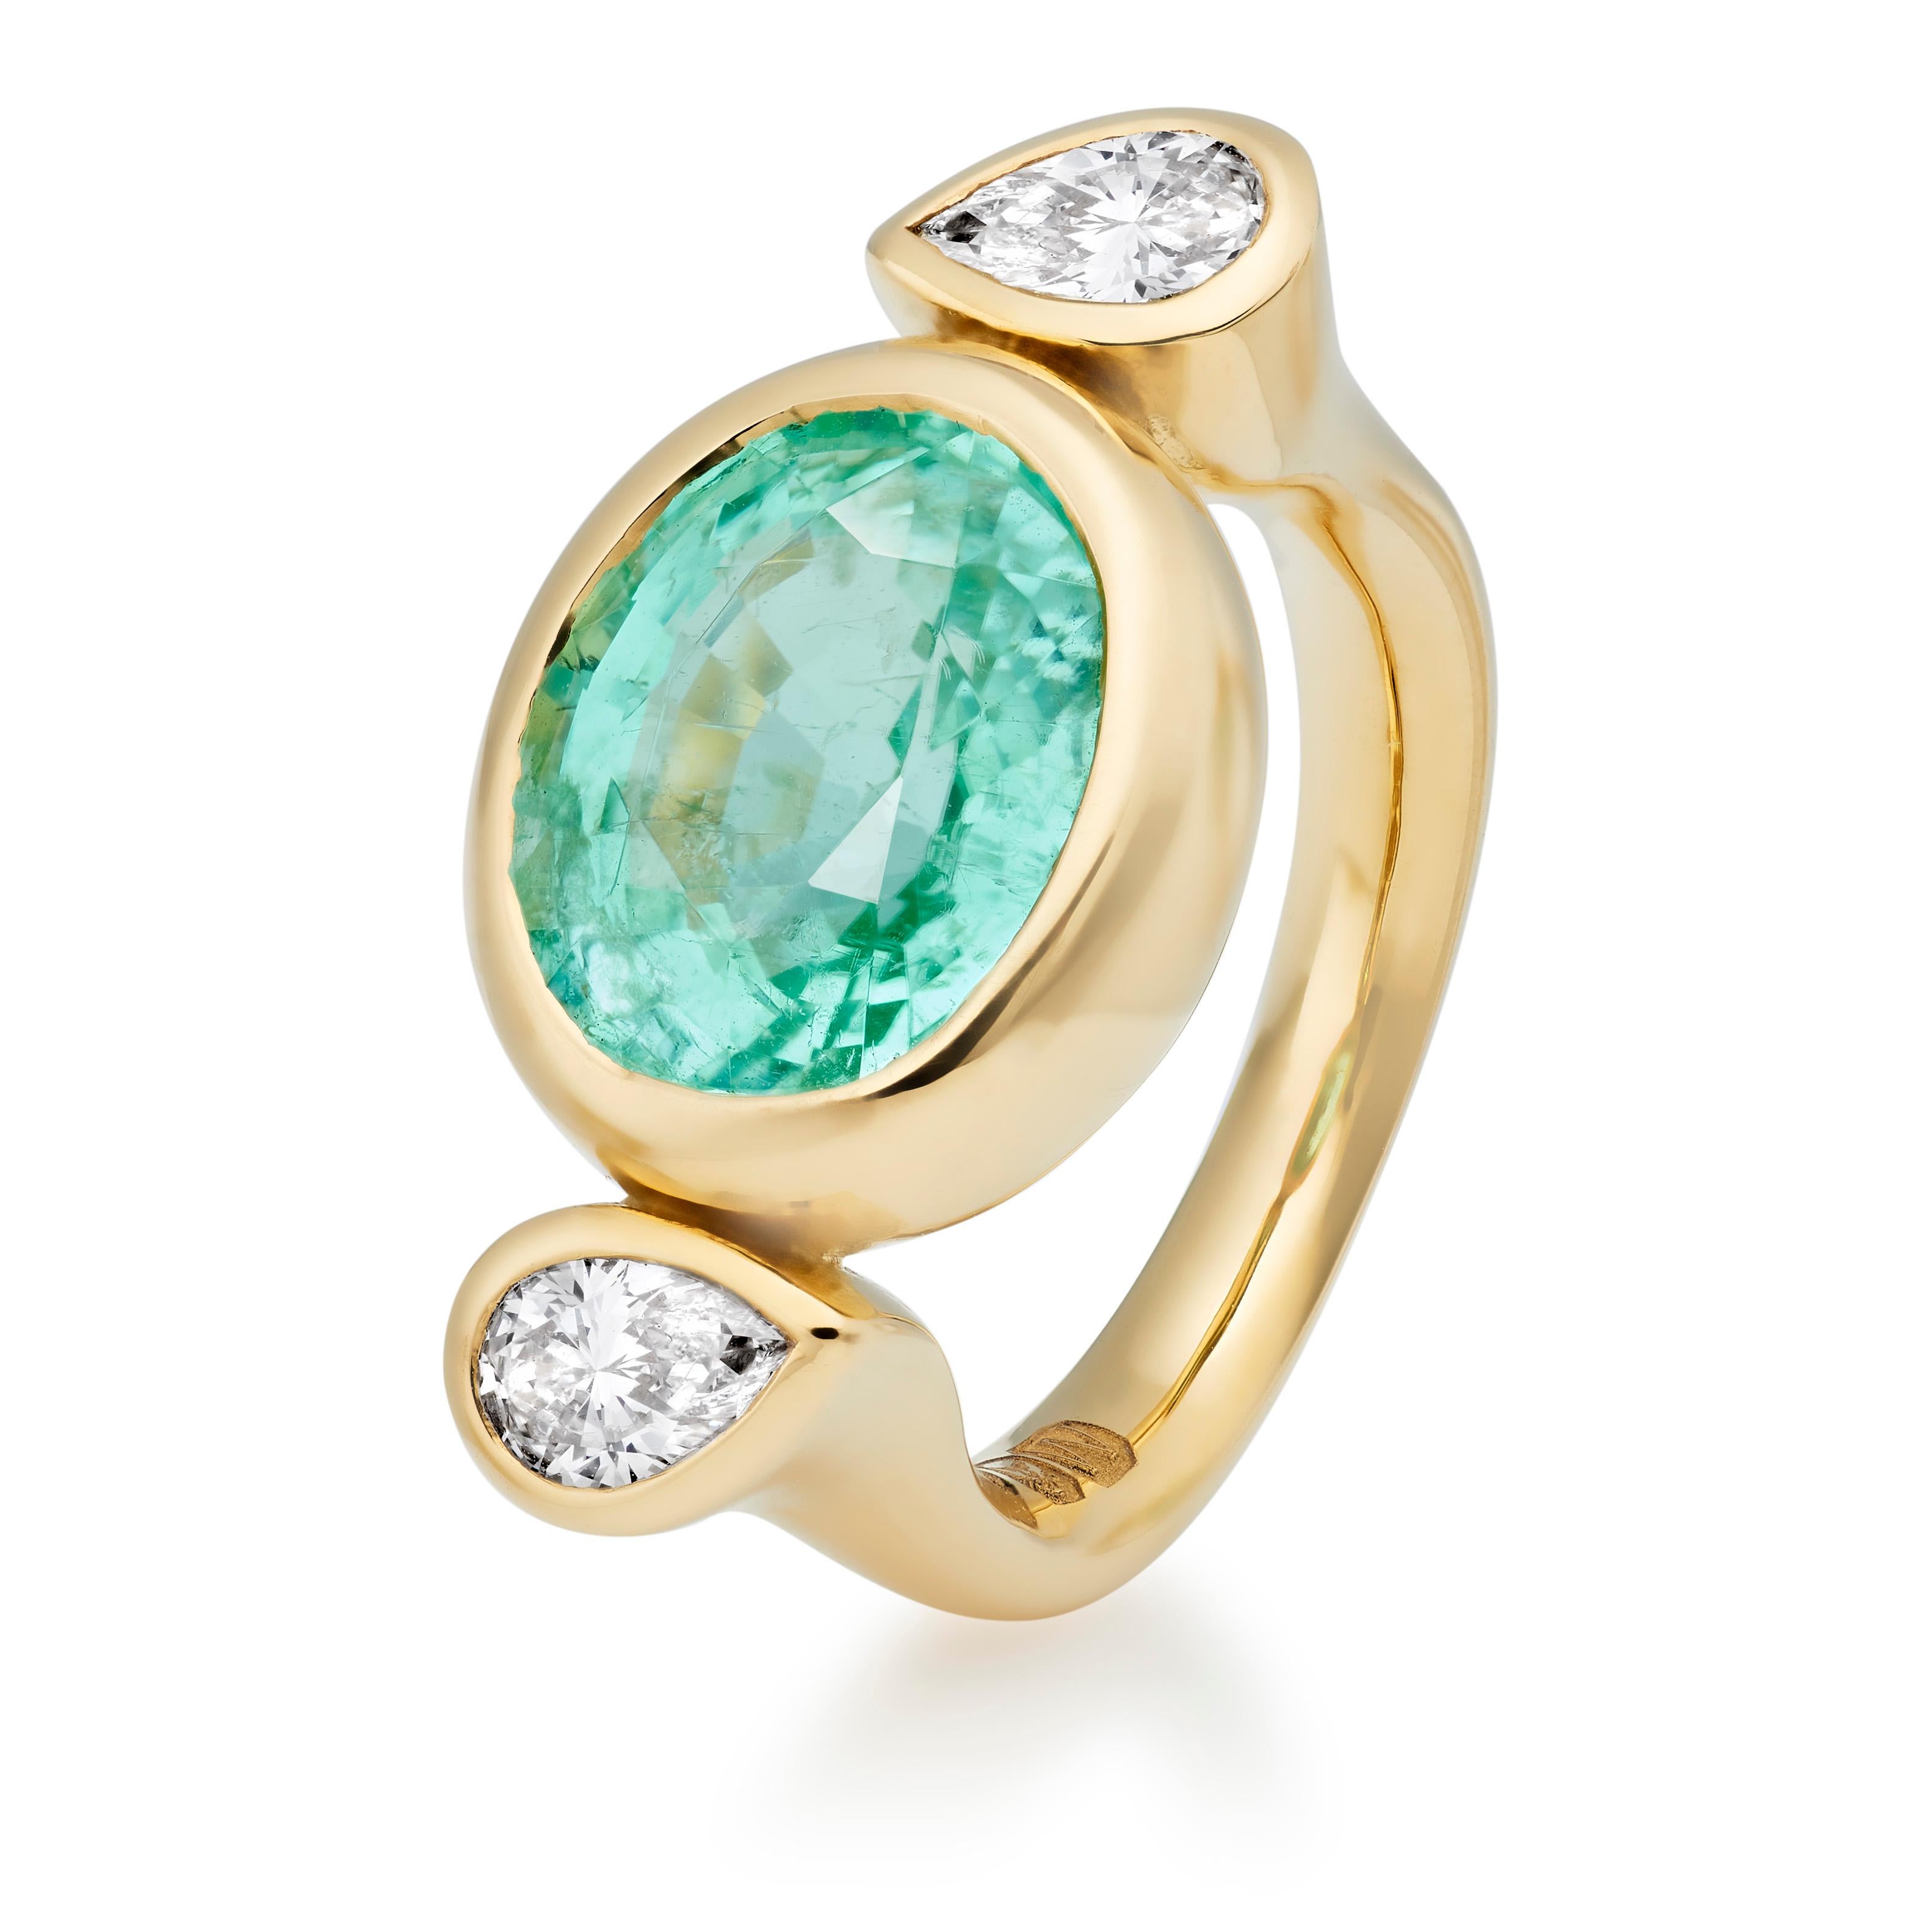 Der Bon Bon ist einer der charakteristischen Ringe von Lilly Hastedt. Dieser besondere Ring hat den begehrten Paraiba-Turmalin in einem ovalen Facettenschliff, gepaart mit funkelnden birnenförmigen Diamanten. 

Das Design dieses Rings folgt der